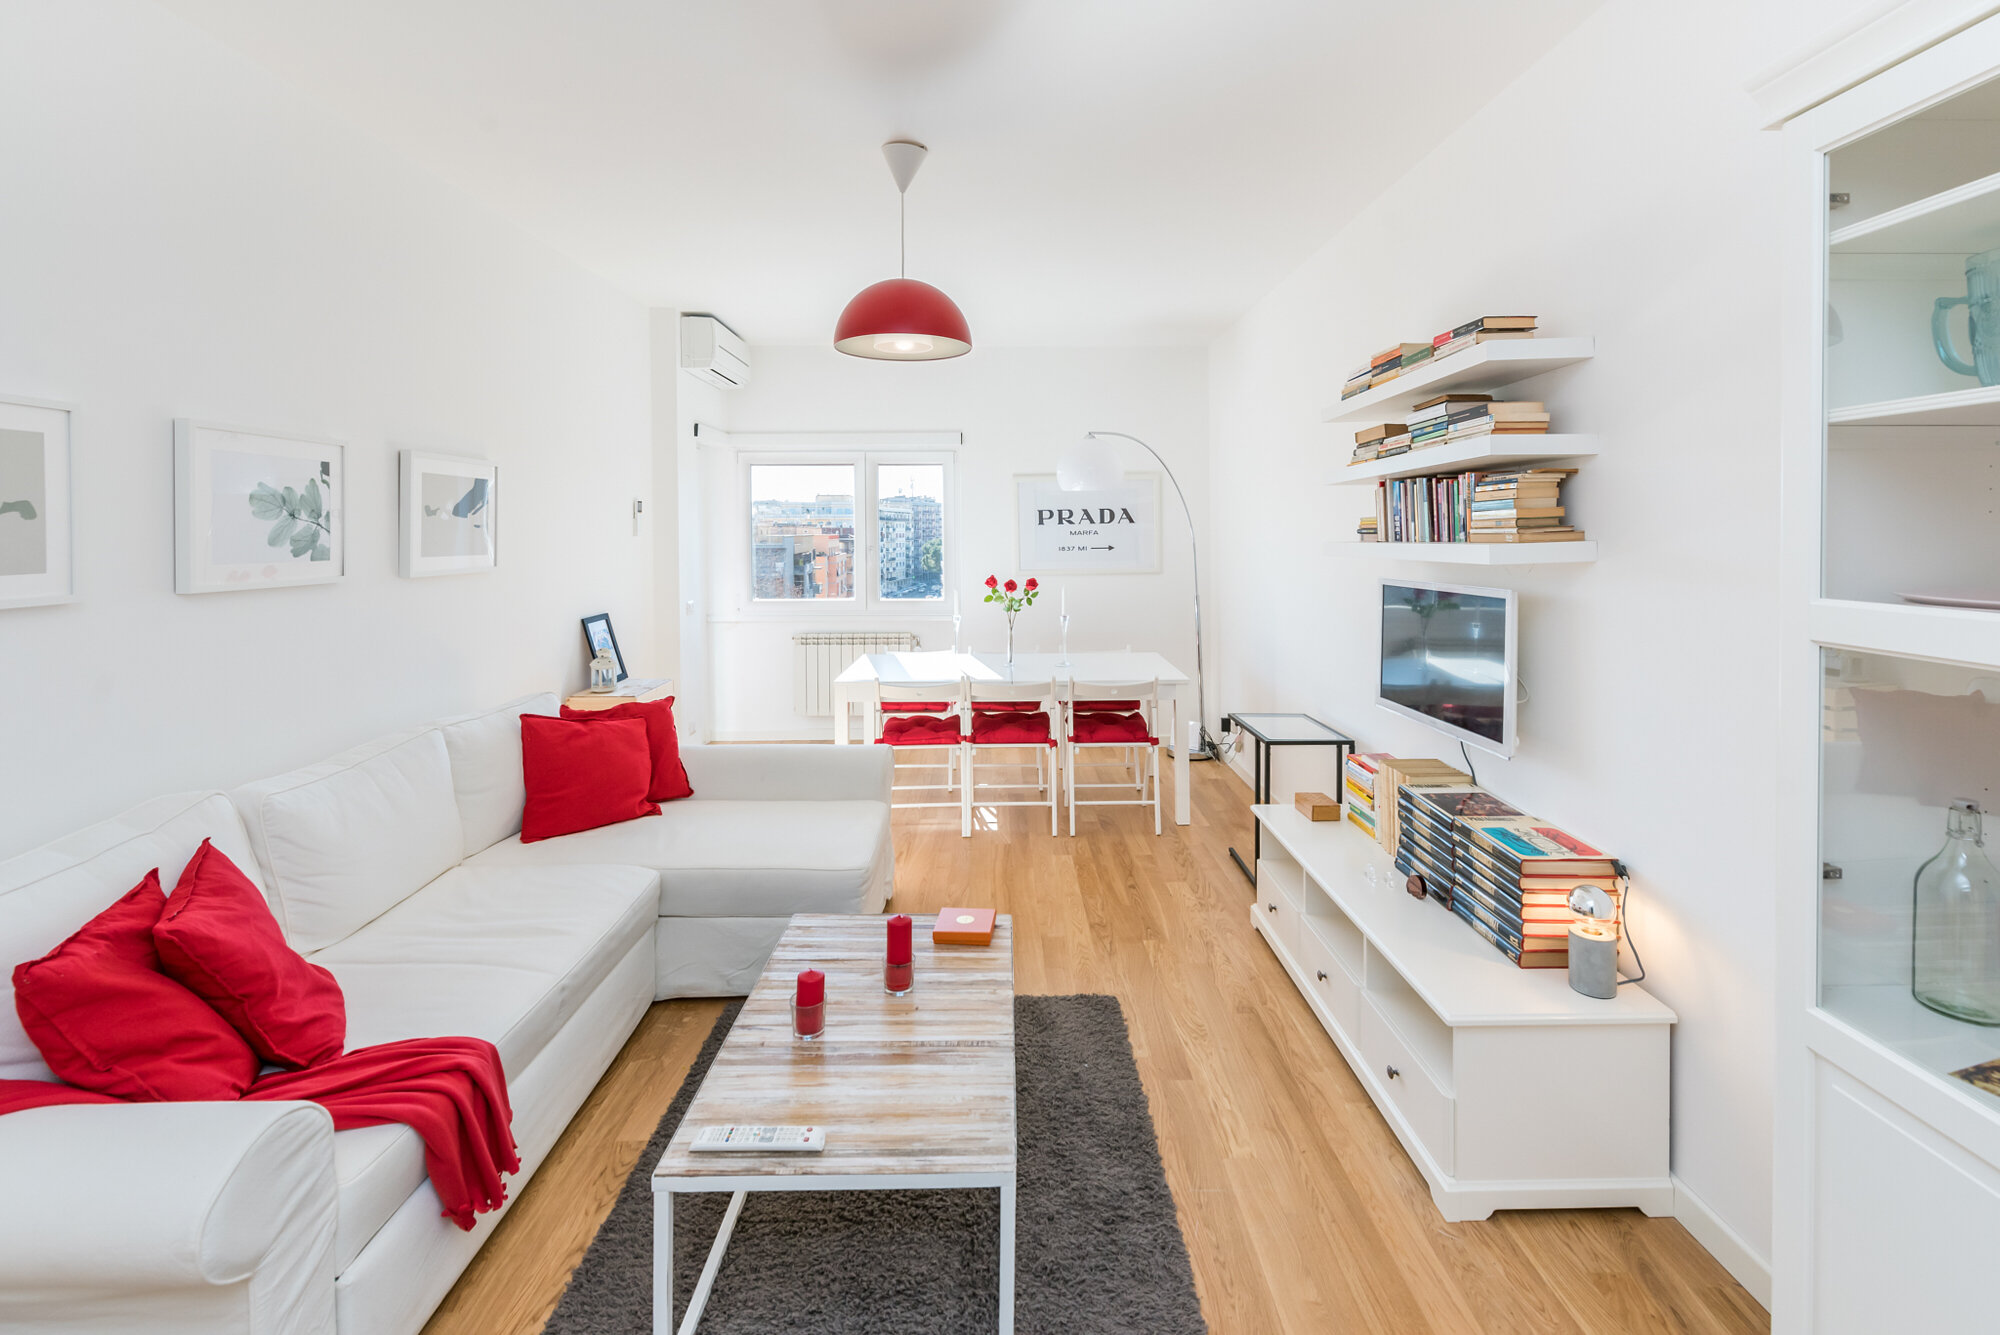  real estate fotografo immobiliare airbnb milano roma venezia firenze 